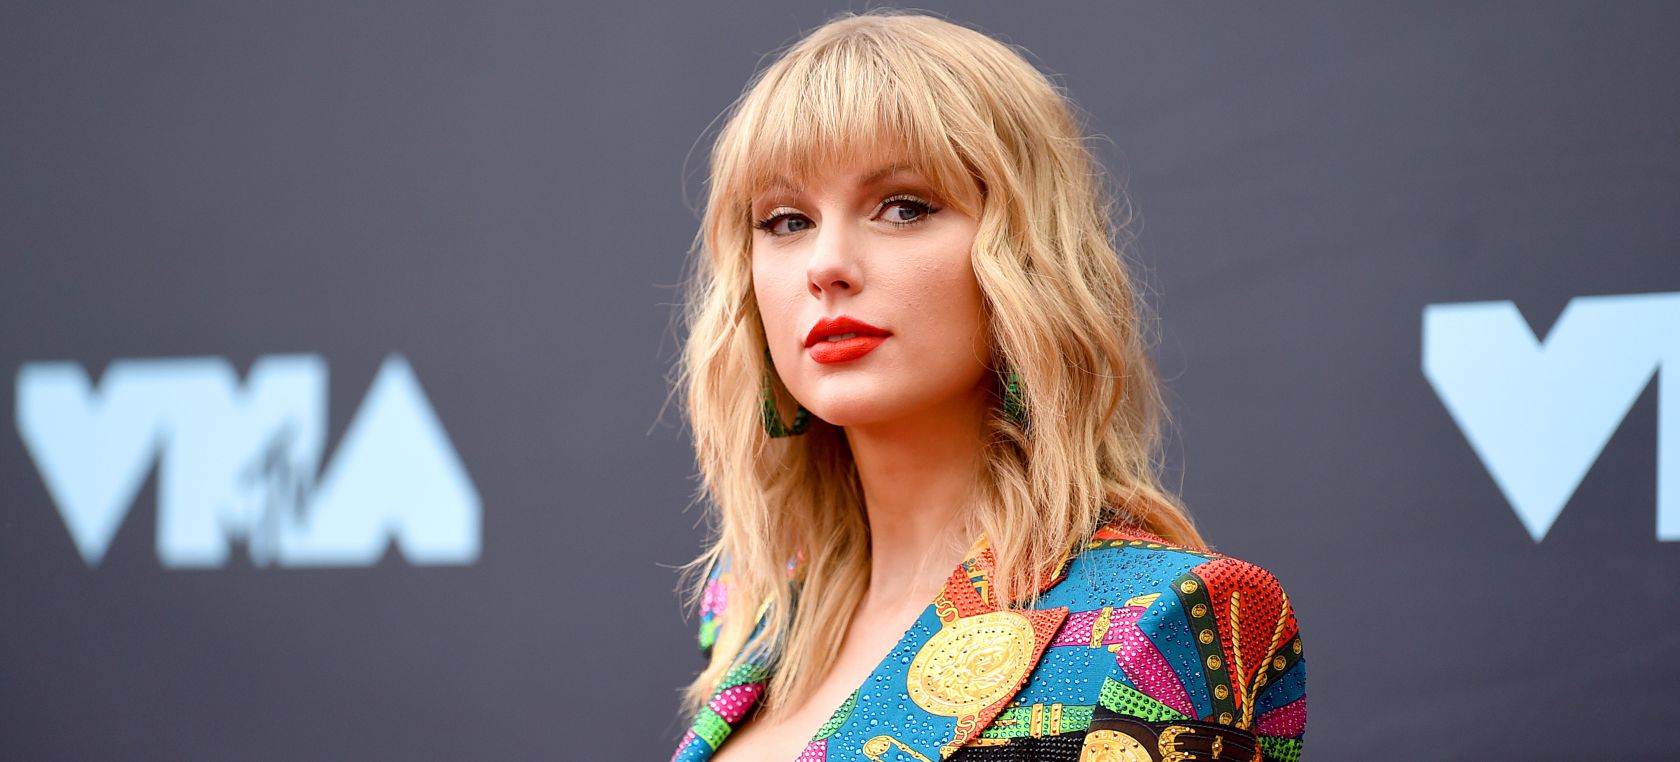 Taylor Swift tiene una colección de 7 canciones escritas a sus ex novios